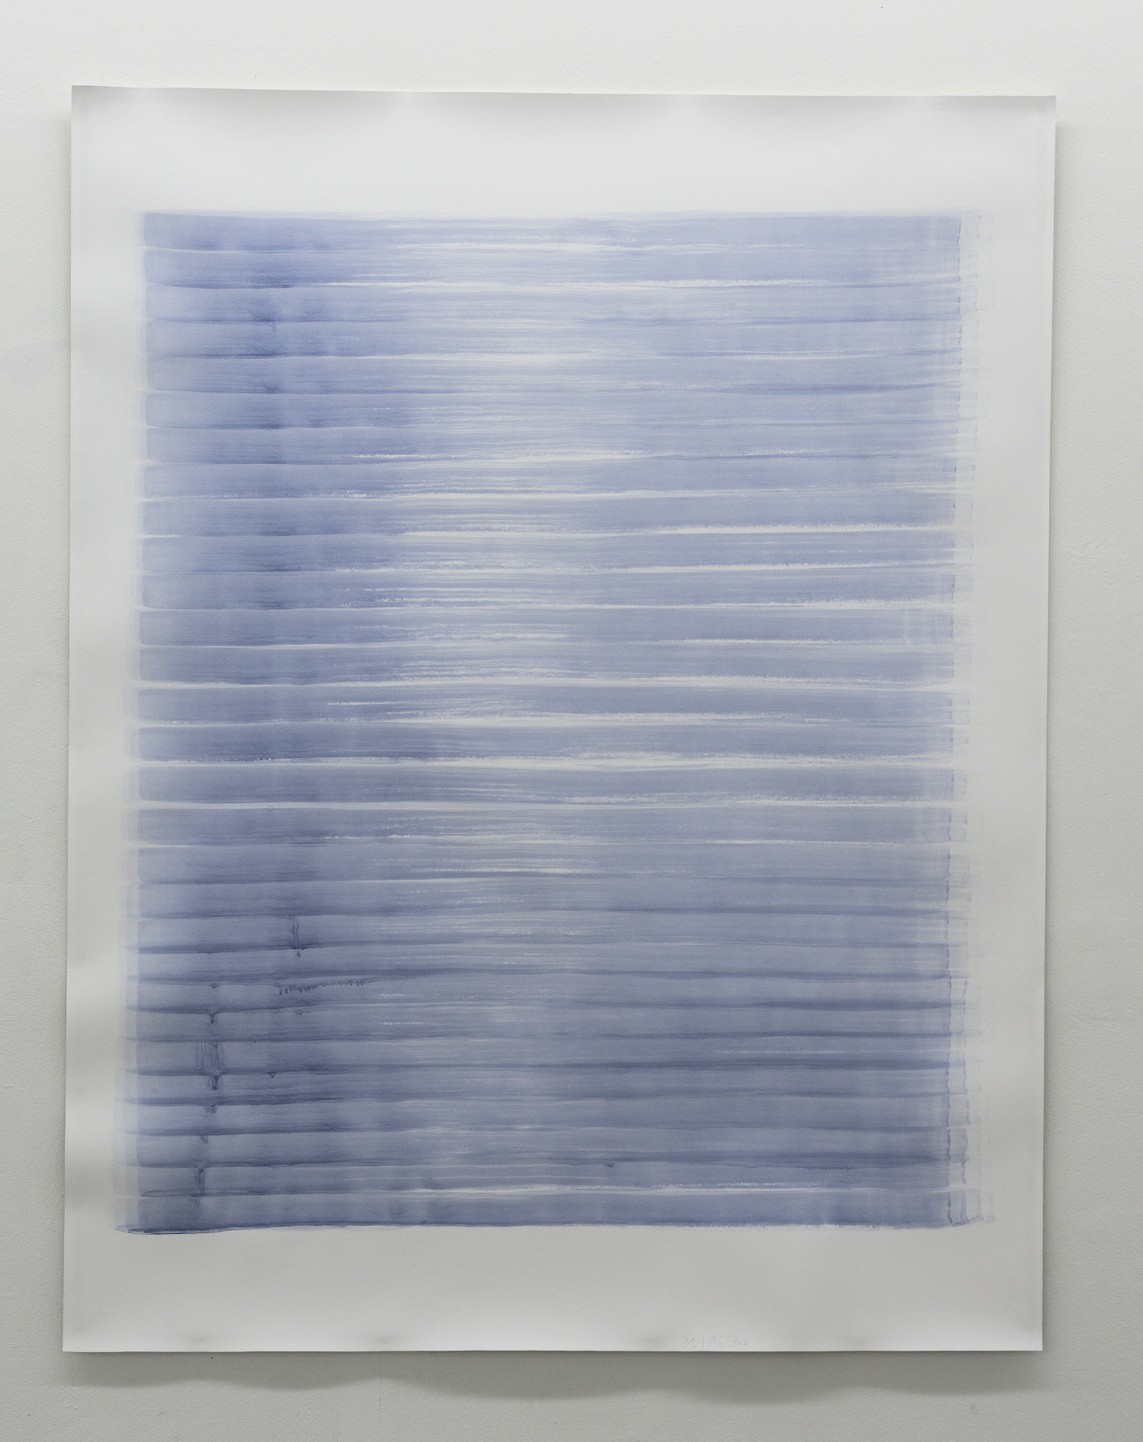 o.T. (31.1.16), Aquarell auf Papier, 2016, 195 x 152 cm